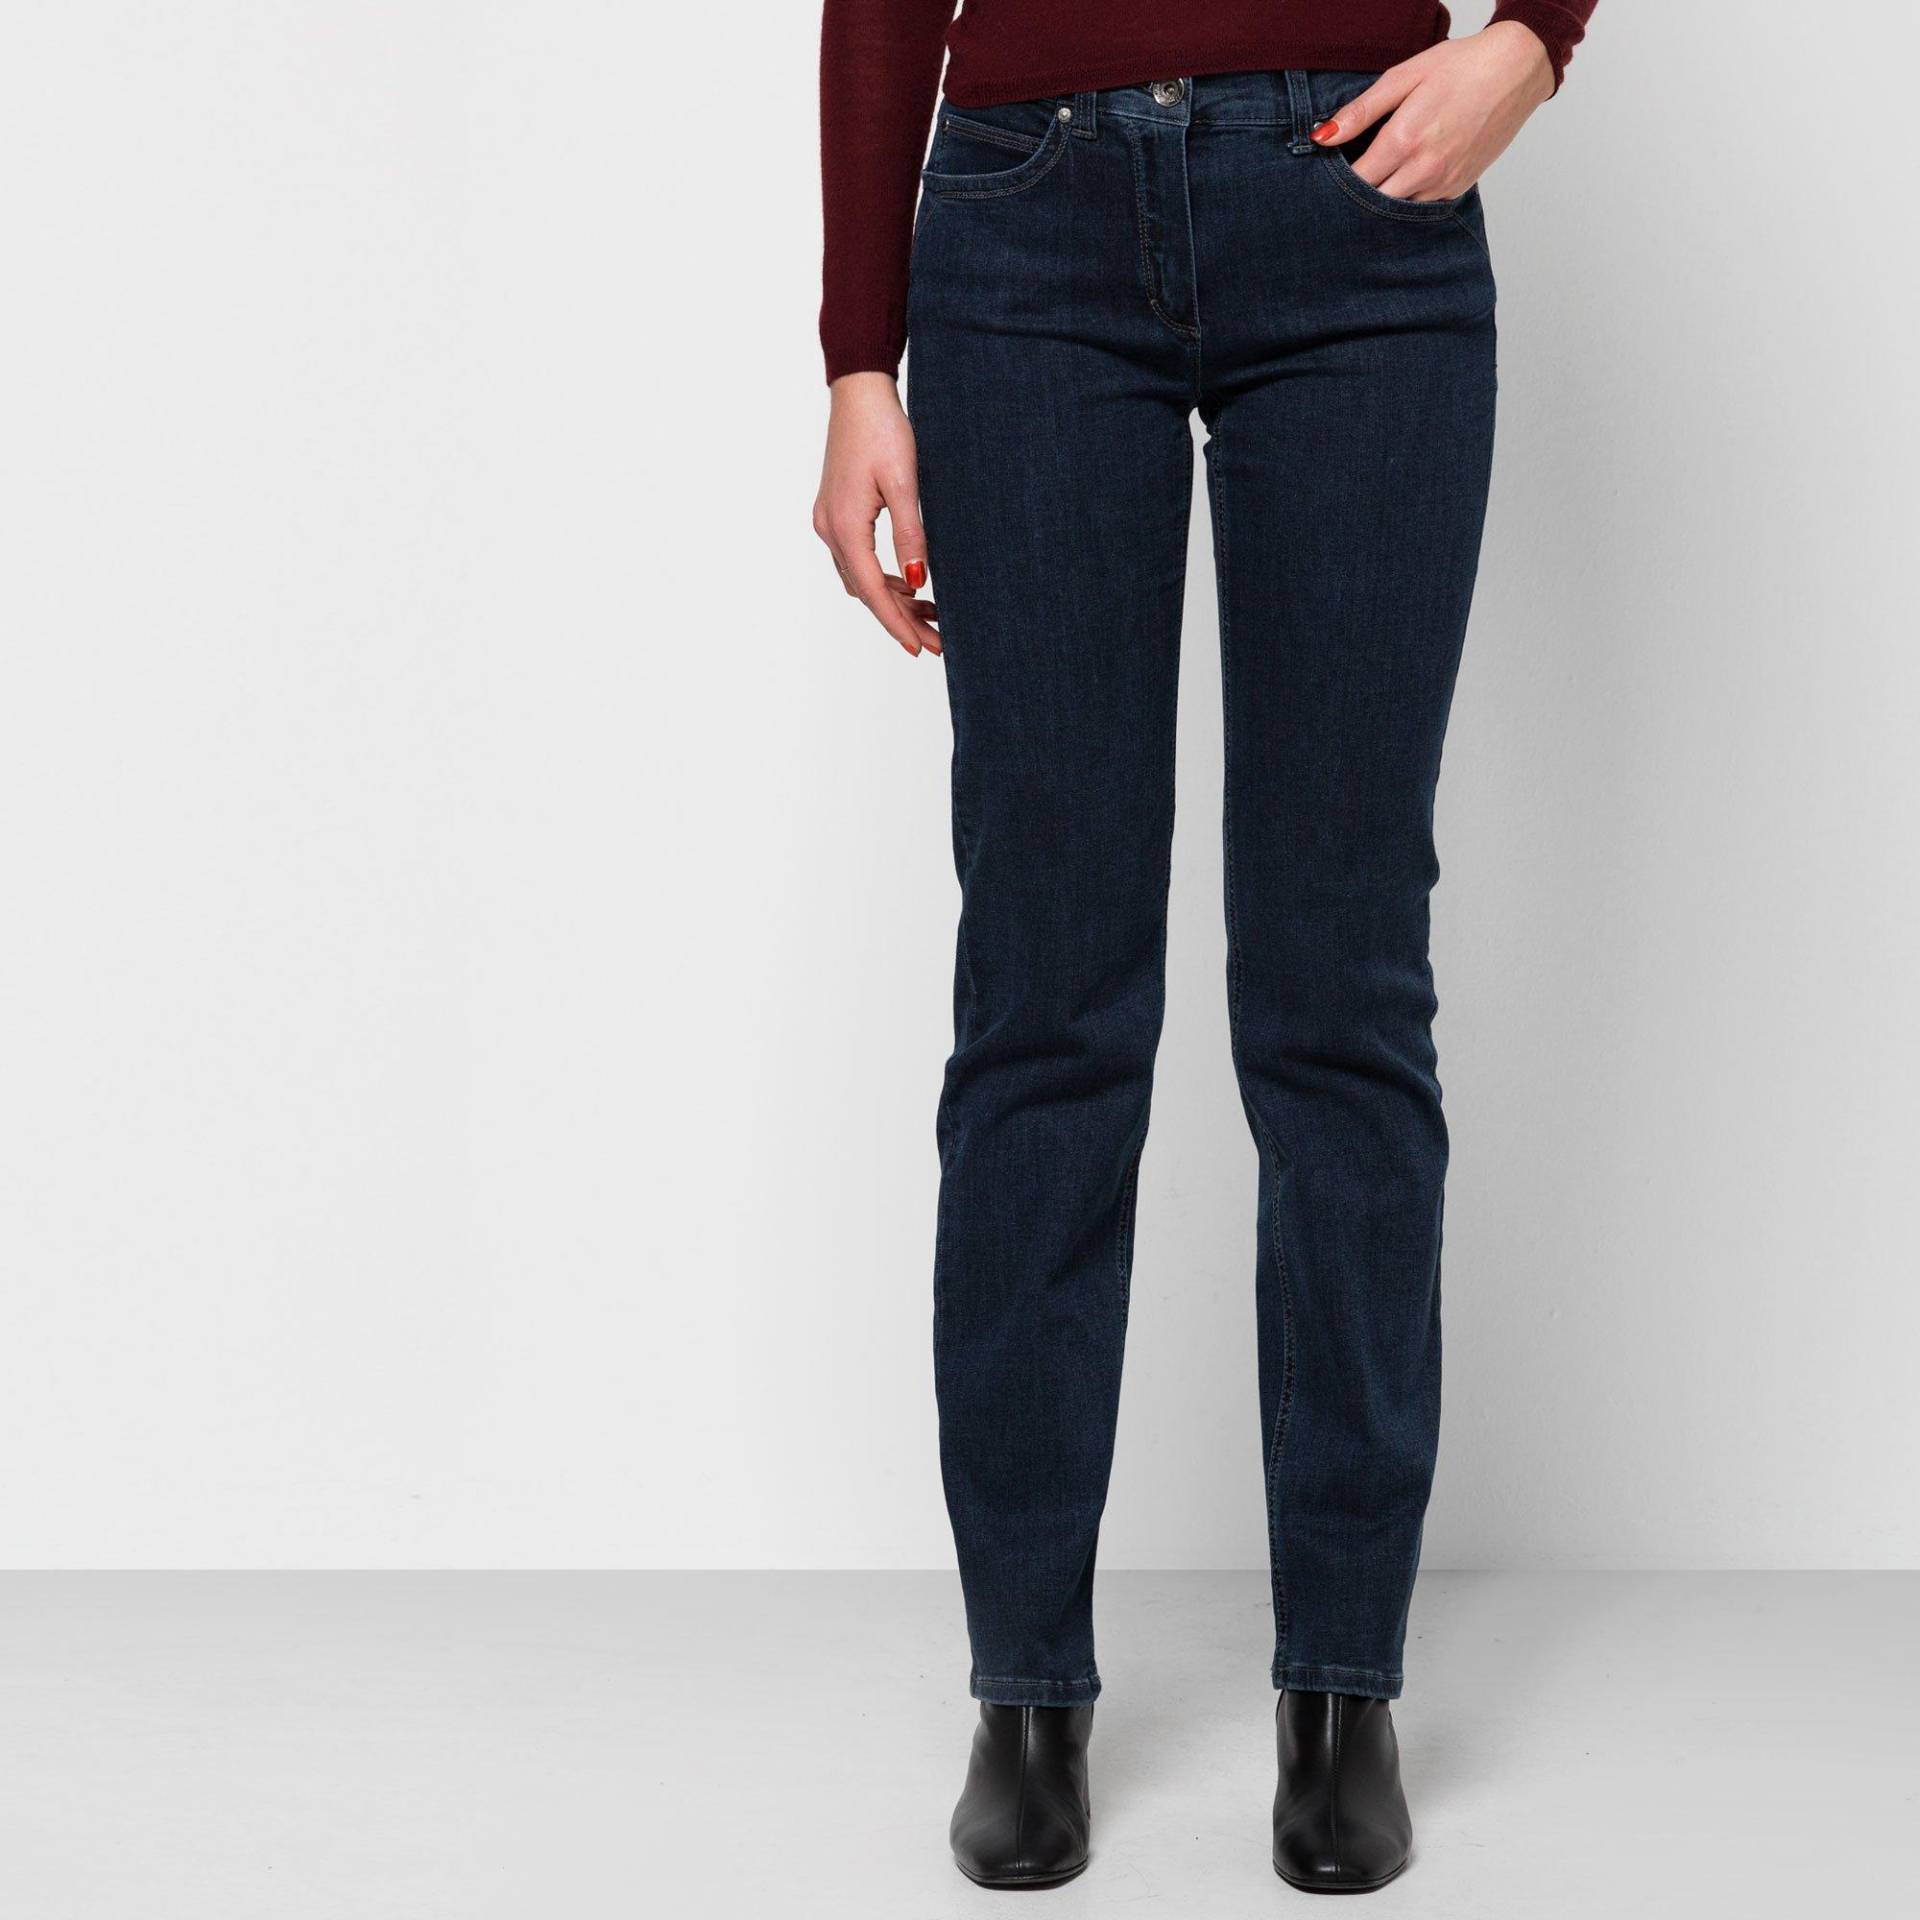 Jeans, Slim Fit Damen Blau Denim W42 von ANNA MONTANA